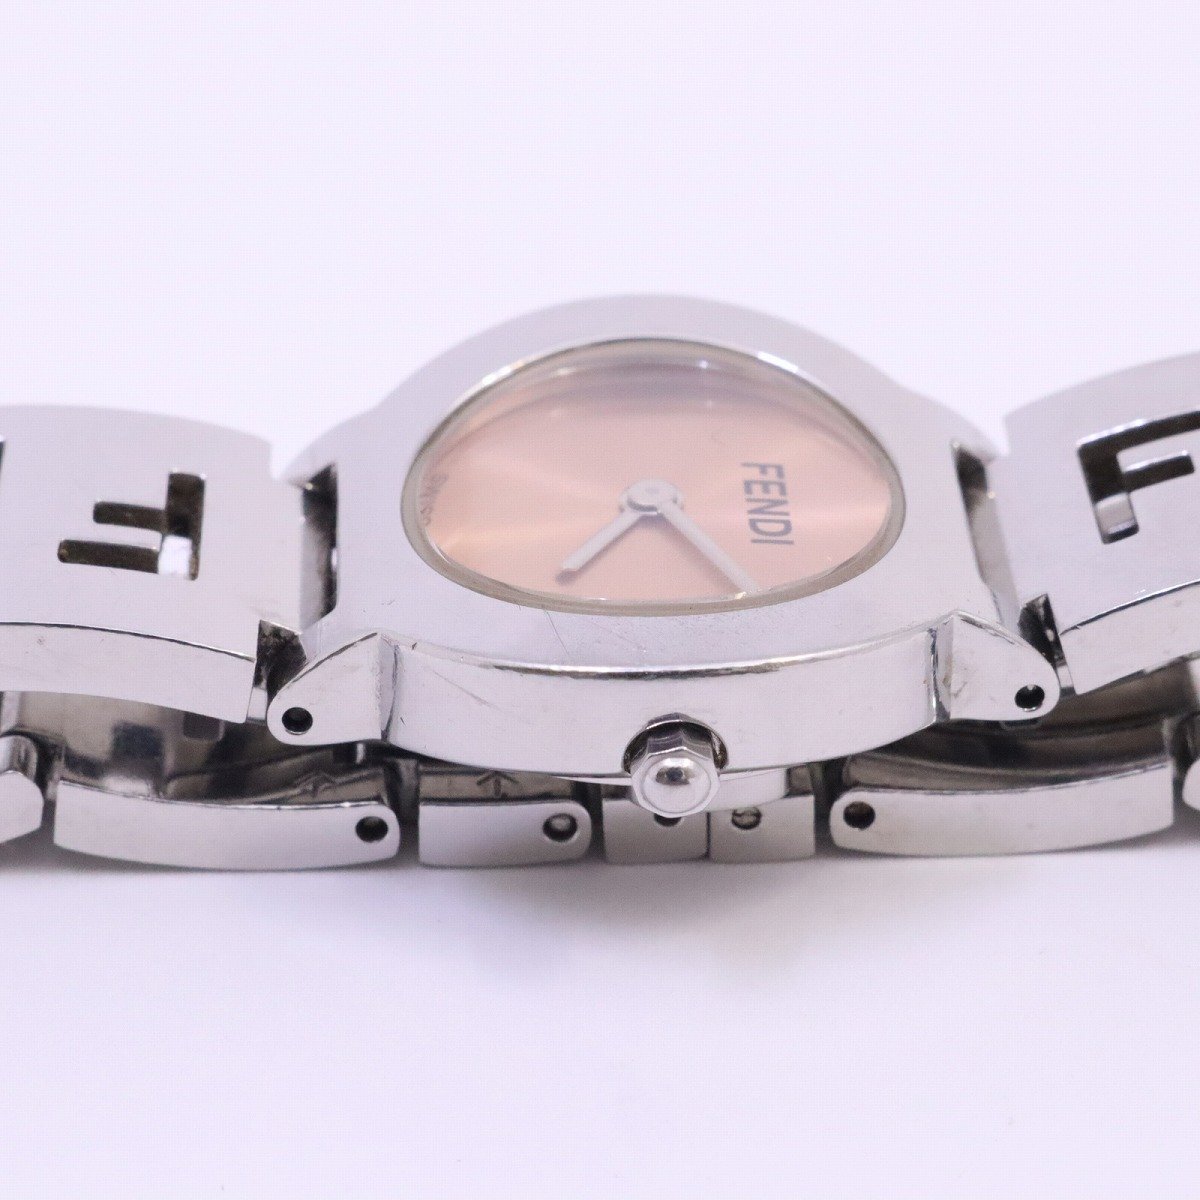  Fendi 3050L пятно Swatch кварц женские наручные часы розовый циферблат оригинальный SS ремень [... ломбард ]